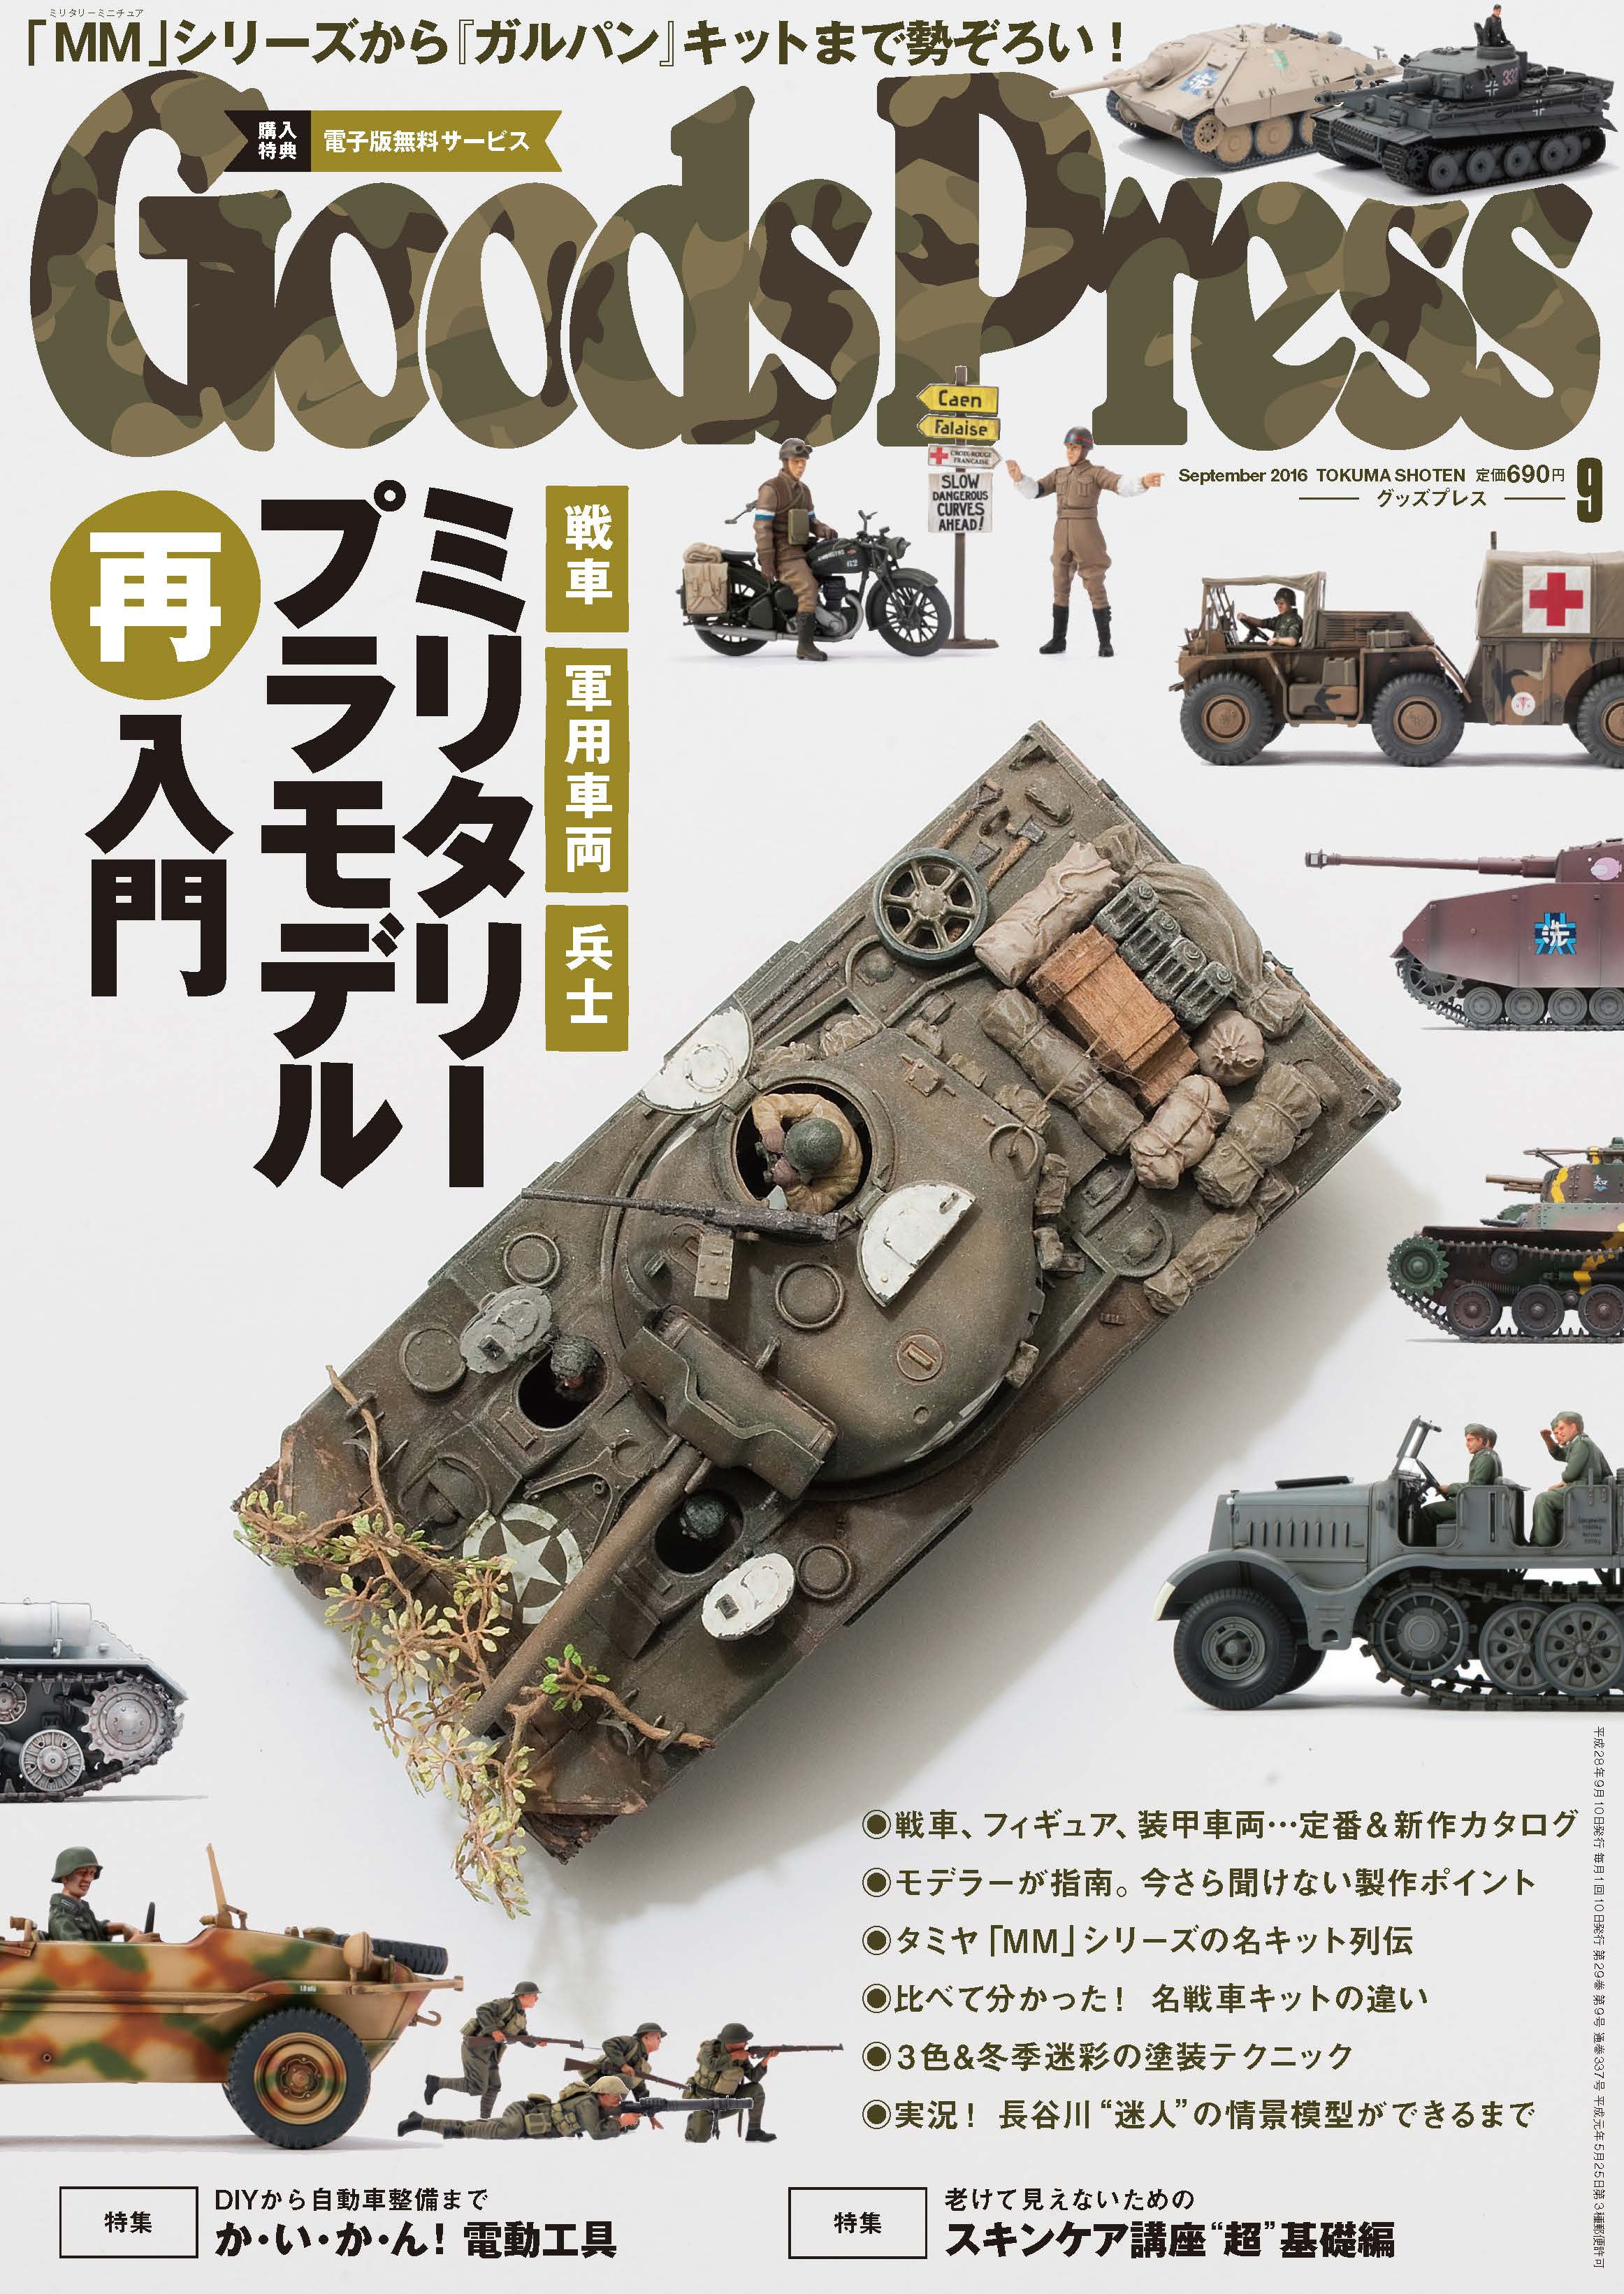 明日8 6 土 発売 Goodspress 9月号は 戦車 軍用車両 フィギュア 選んで 作って 飾って 楽しむ あのワクワクをもう一度 ミリタリープラモデル再入門 を大特集 徳間書店のプレスリリース